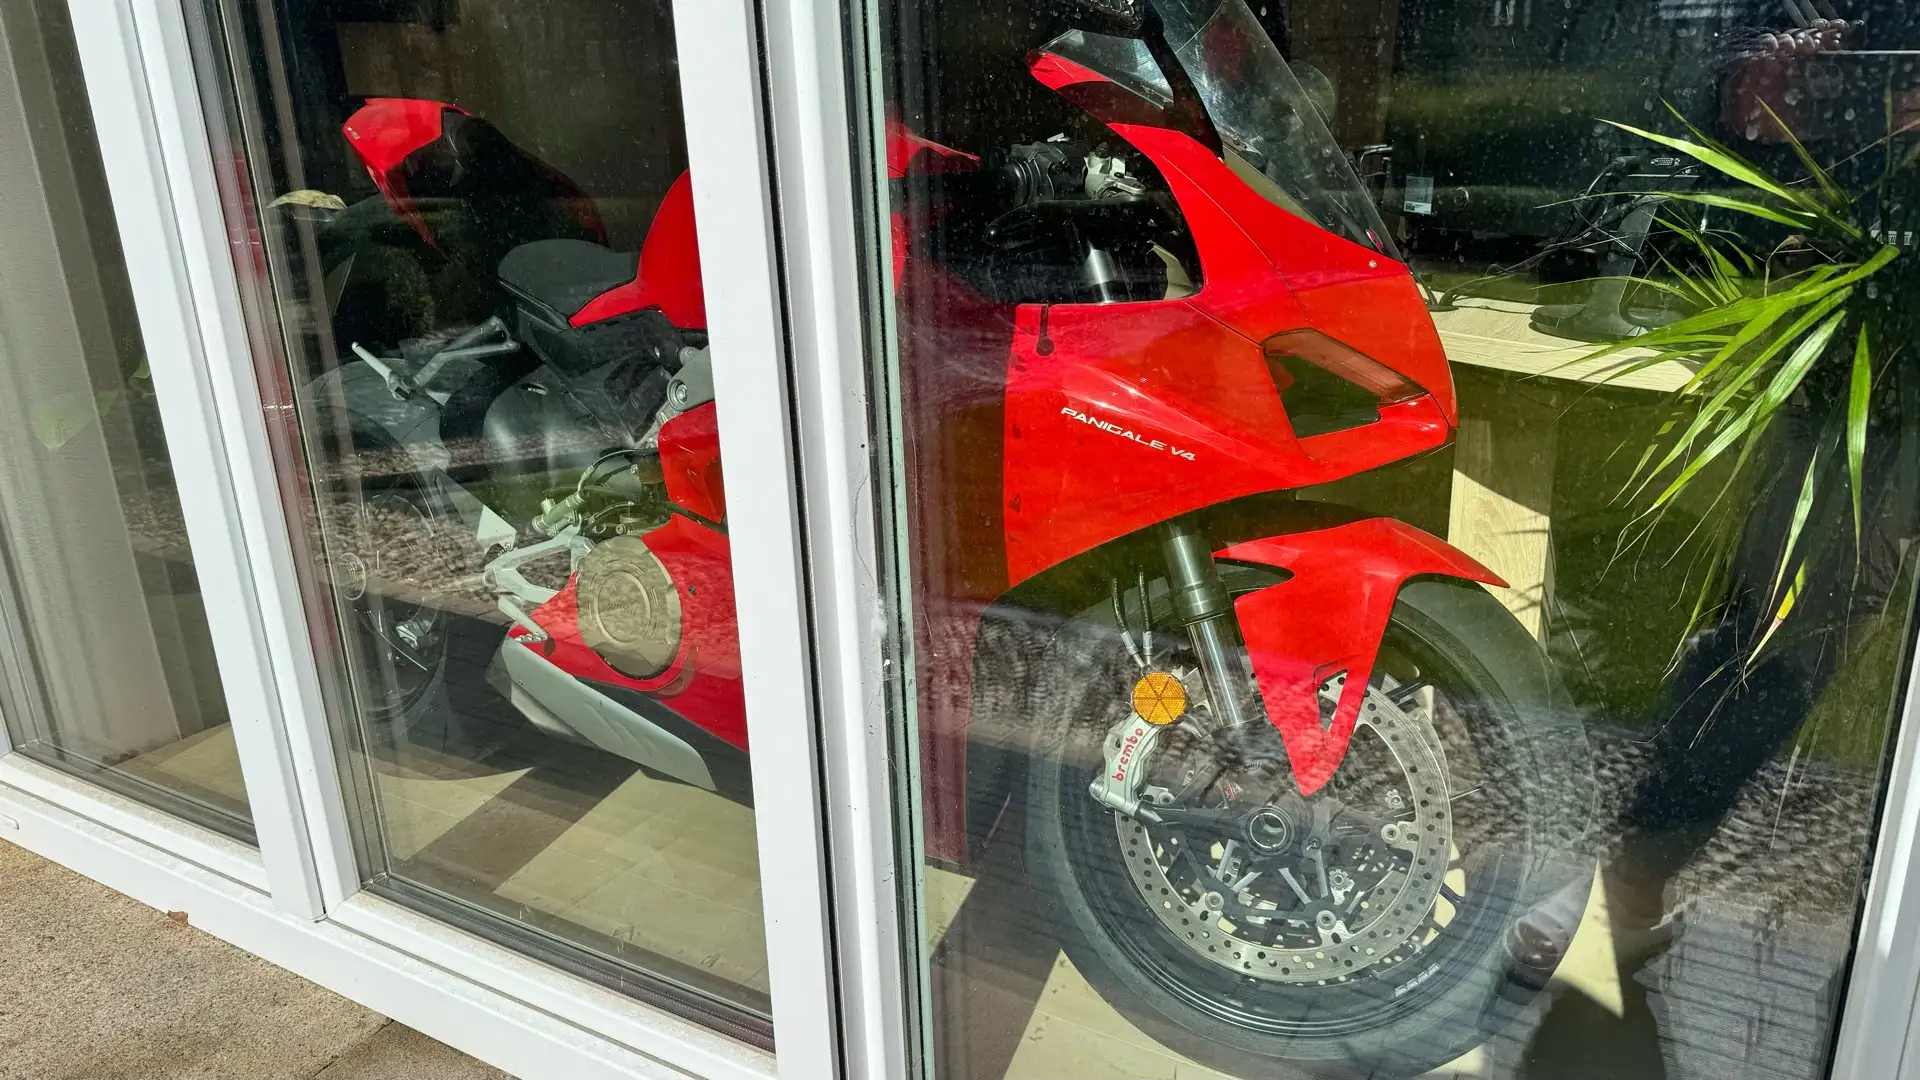 Ducati Panigale V4 Kırmızı - 2